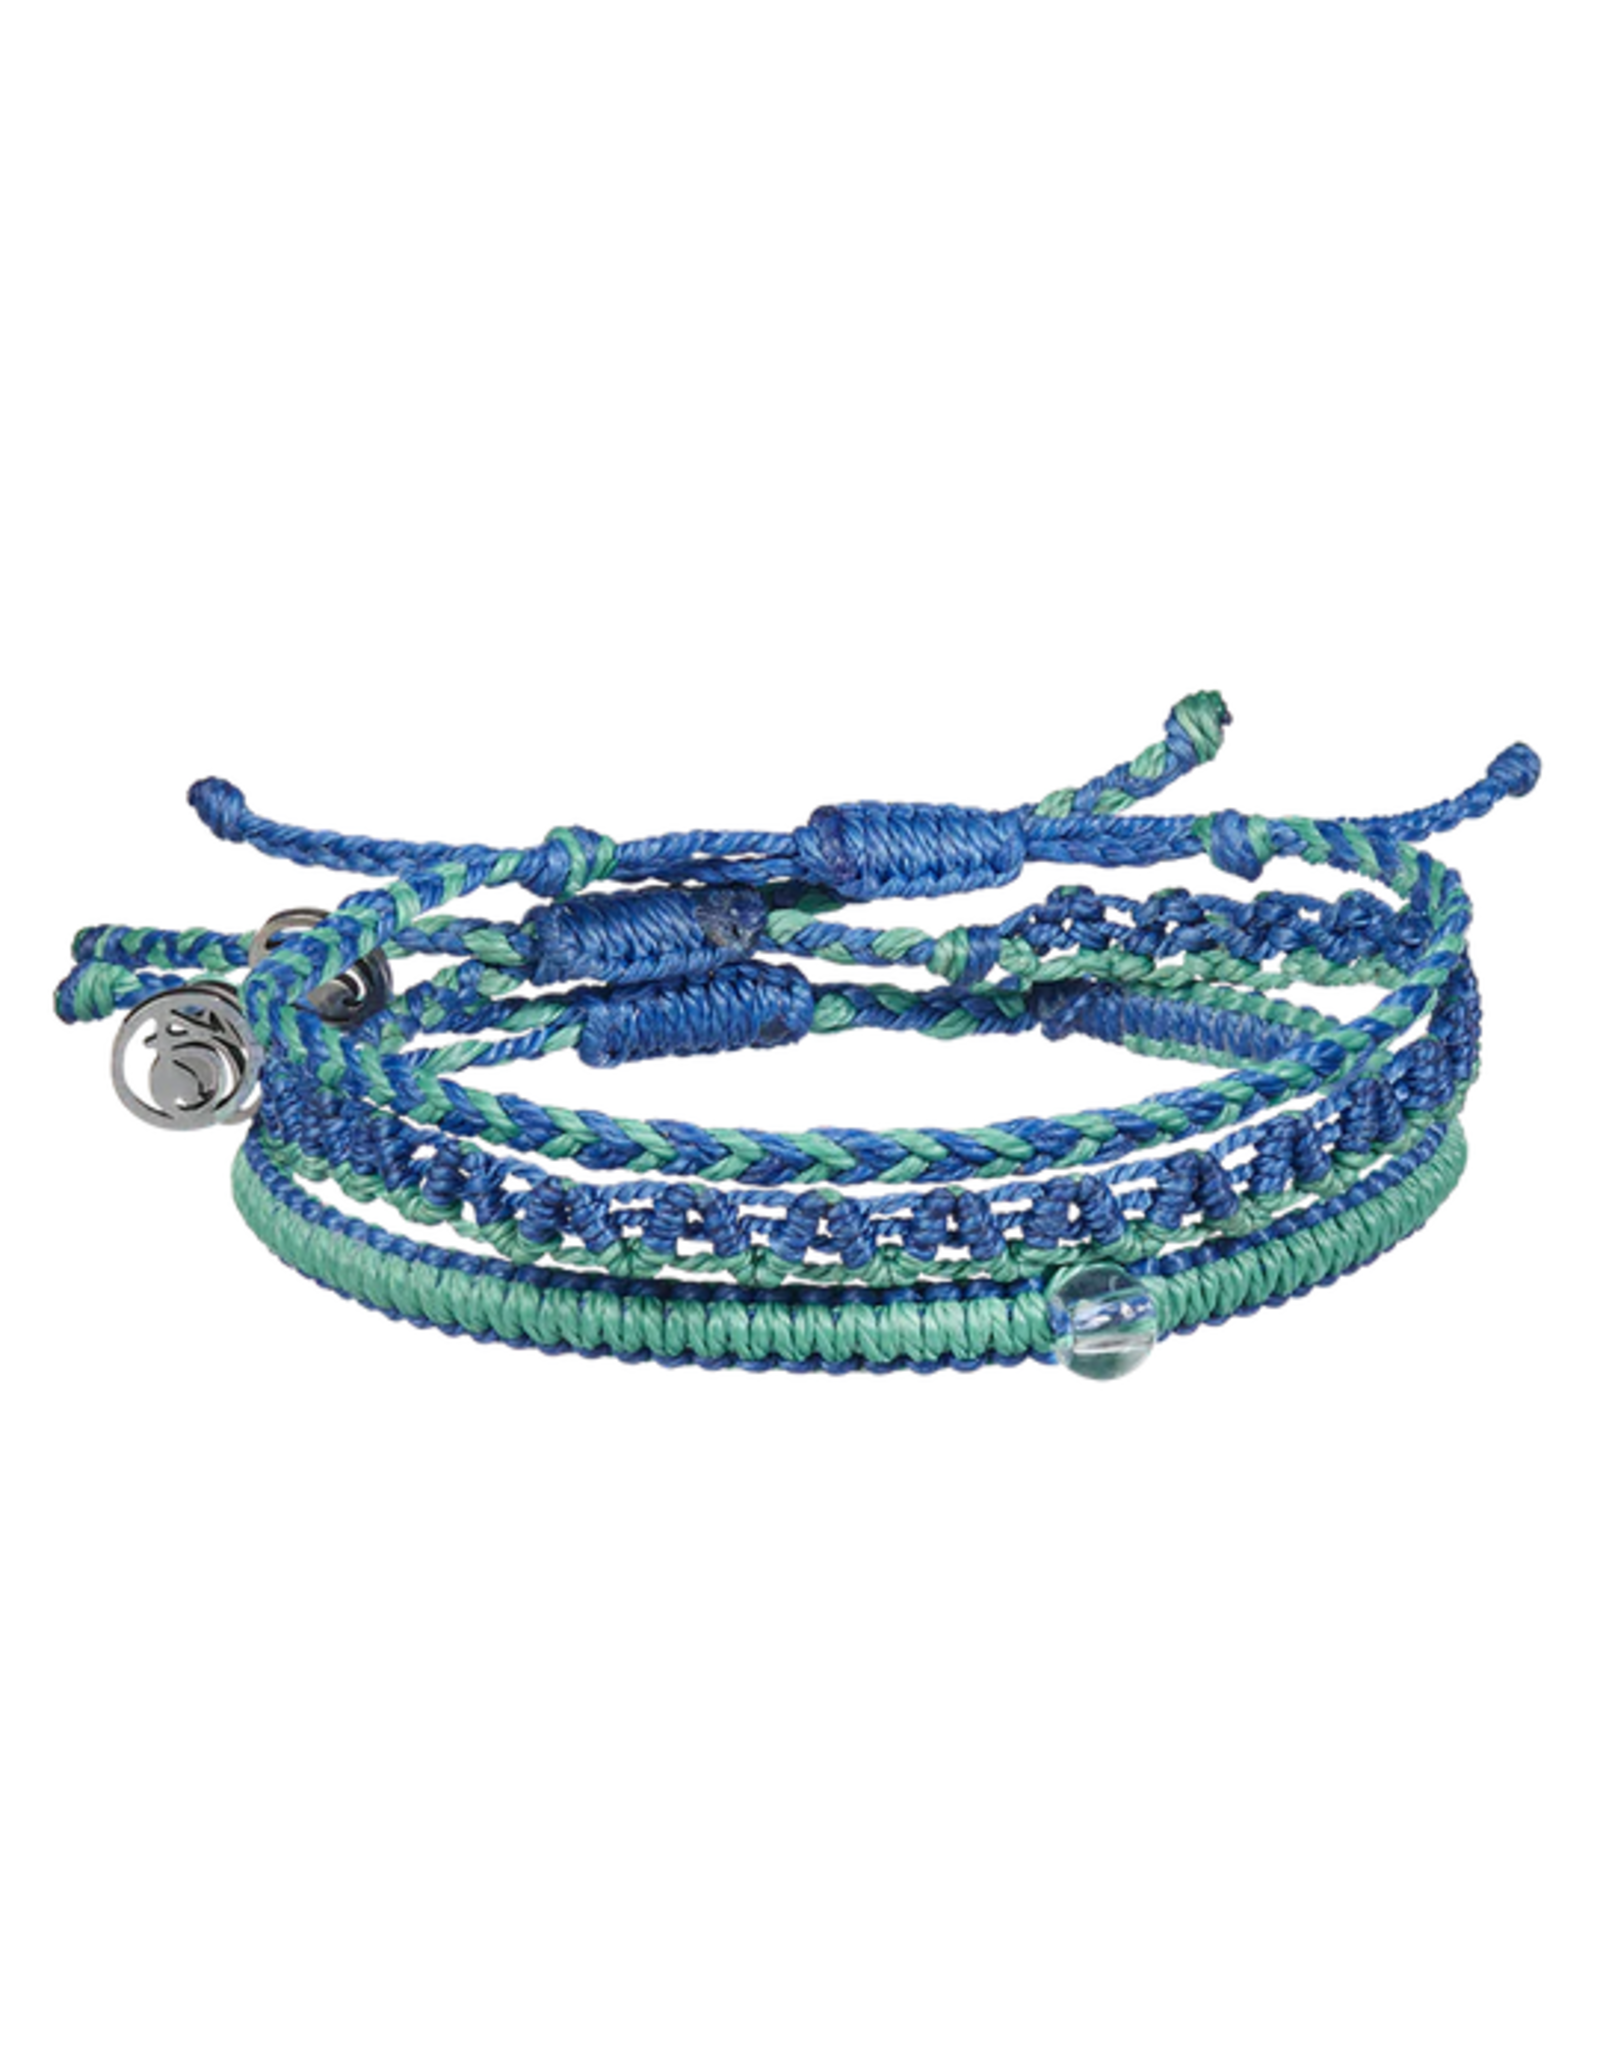 4Ocean 4Ocean 22216000 Earth Stack Blue & Earth Green Bracelet